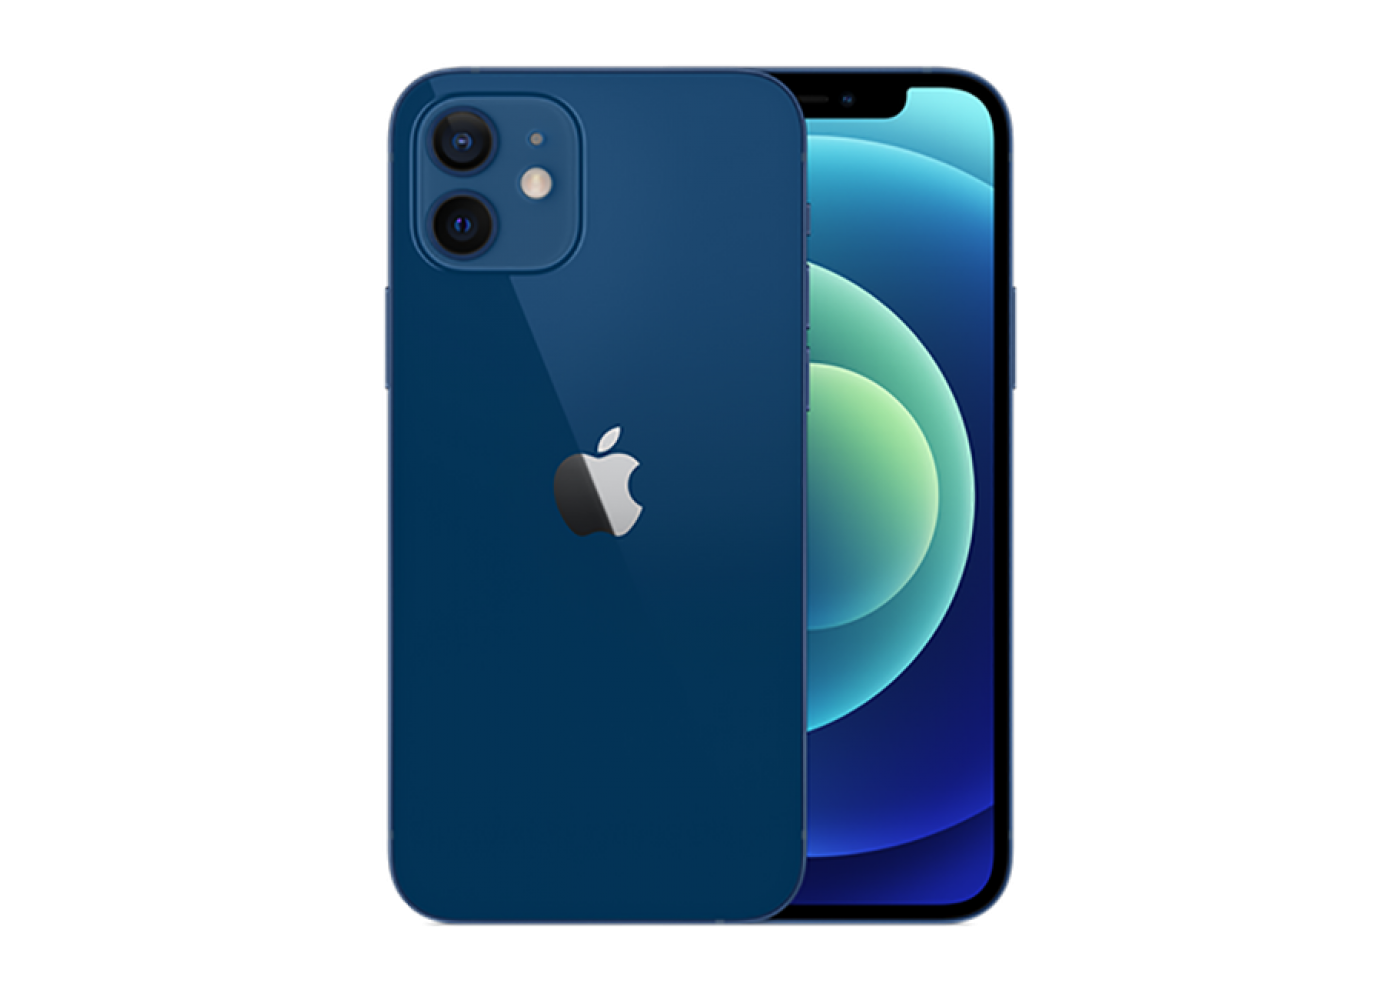 Смартфон Apple iPhone 12 mini 128Gb Blue